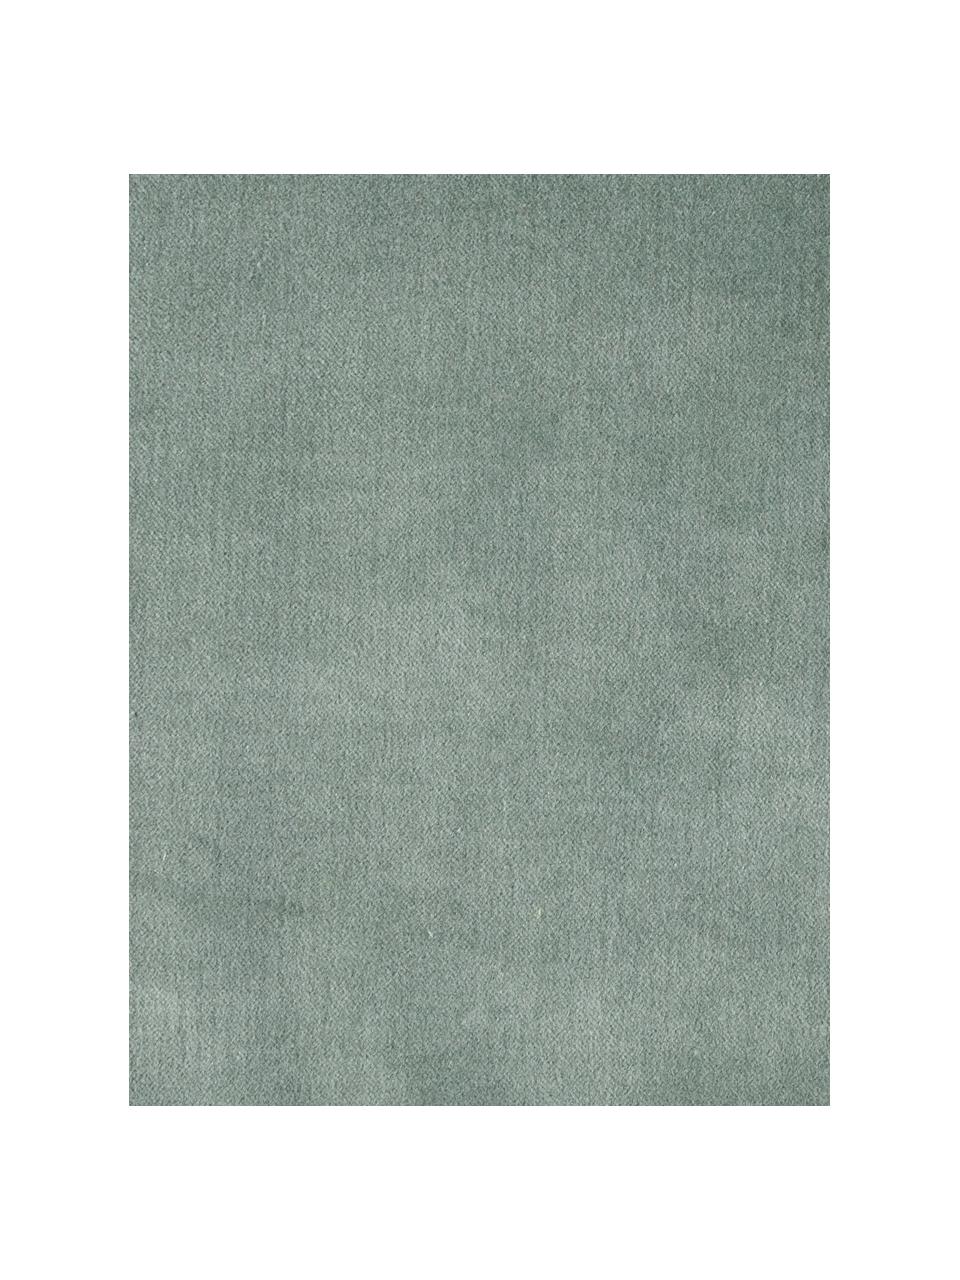 Housse de coussin en velours vert sauge à franges Phoeby, Coton, Vert sauge, larg. 40 x long. 40 cm